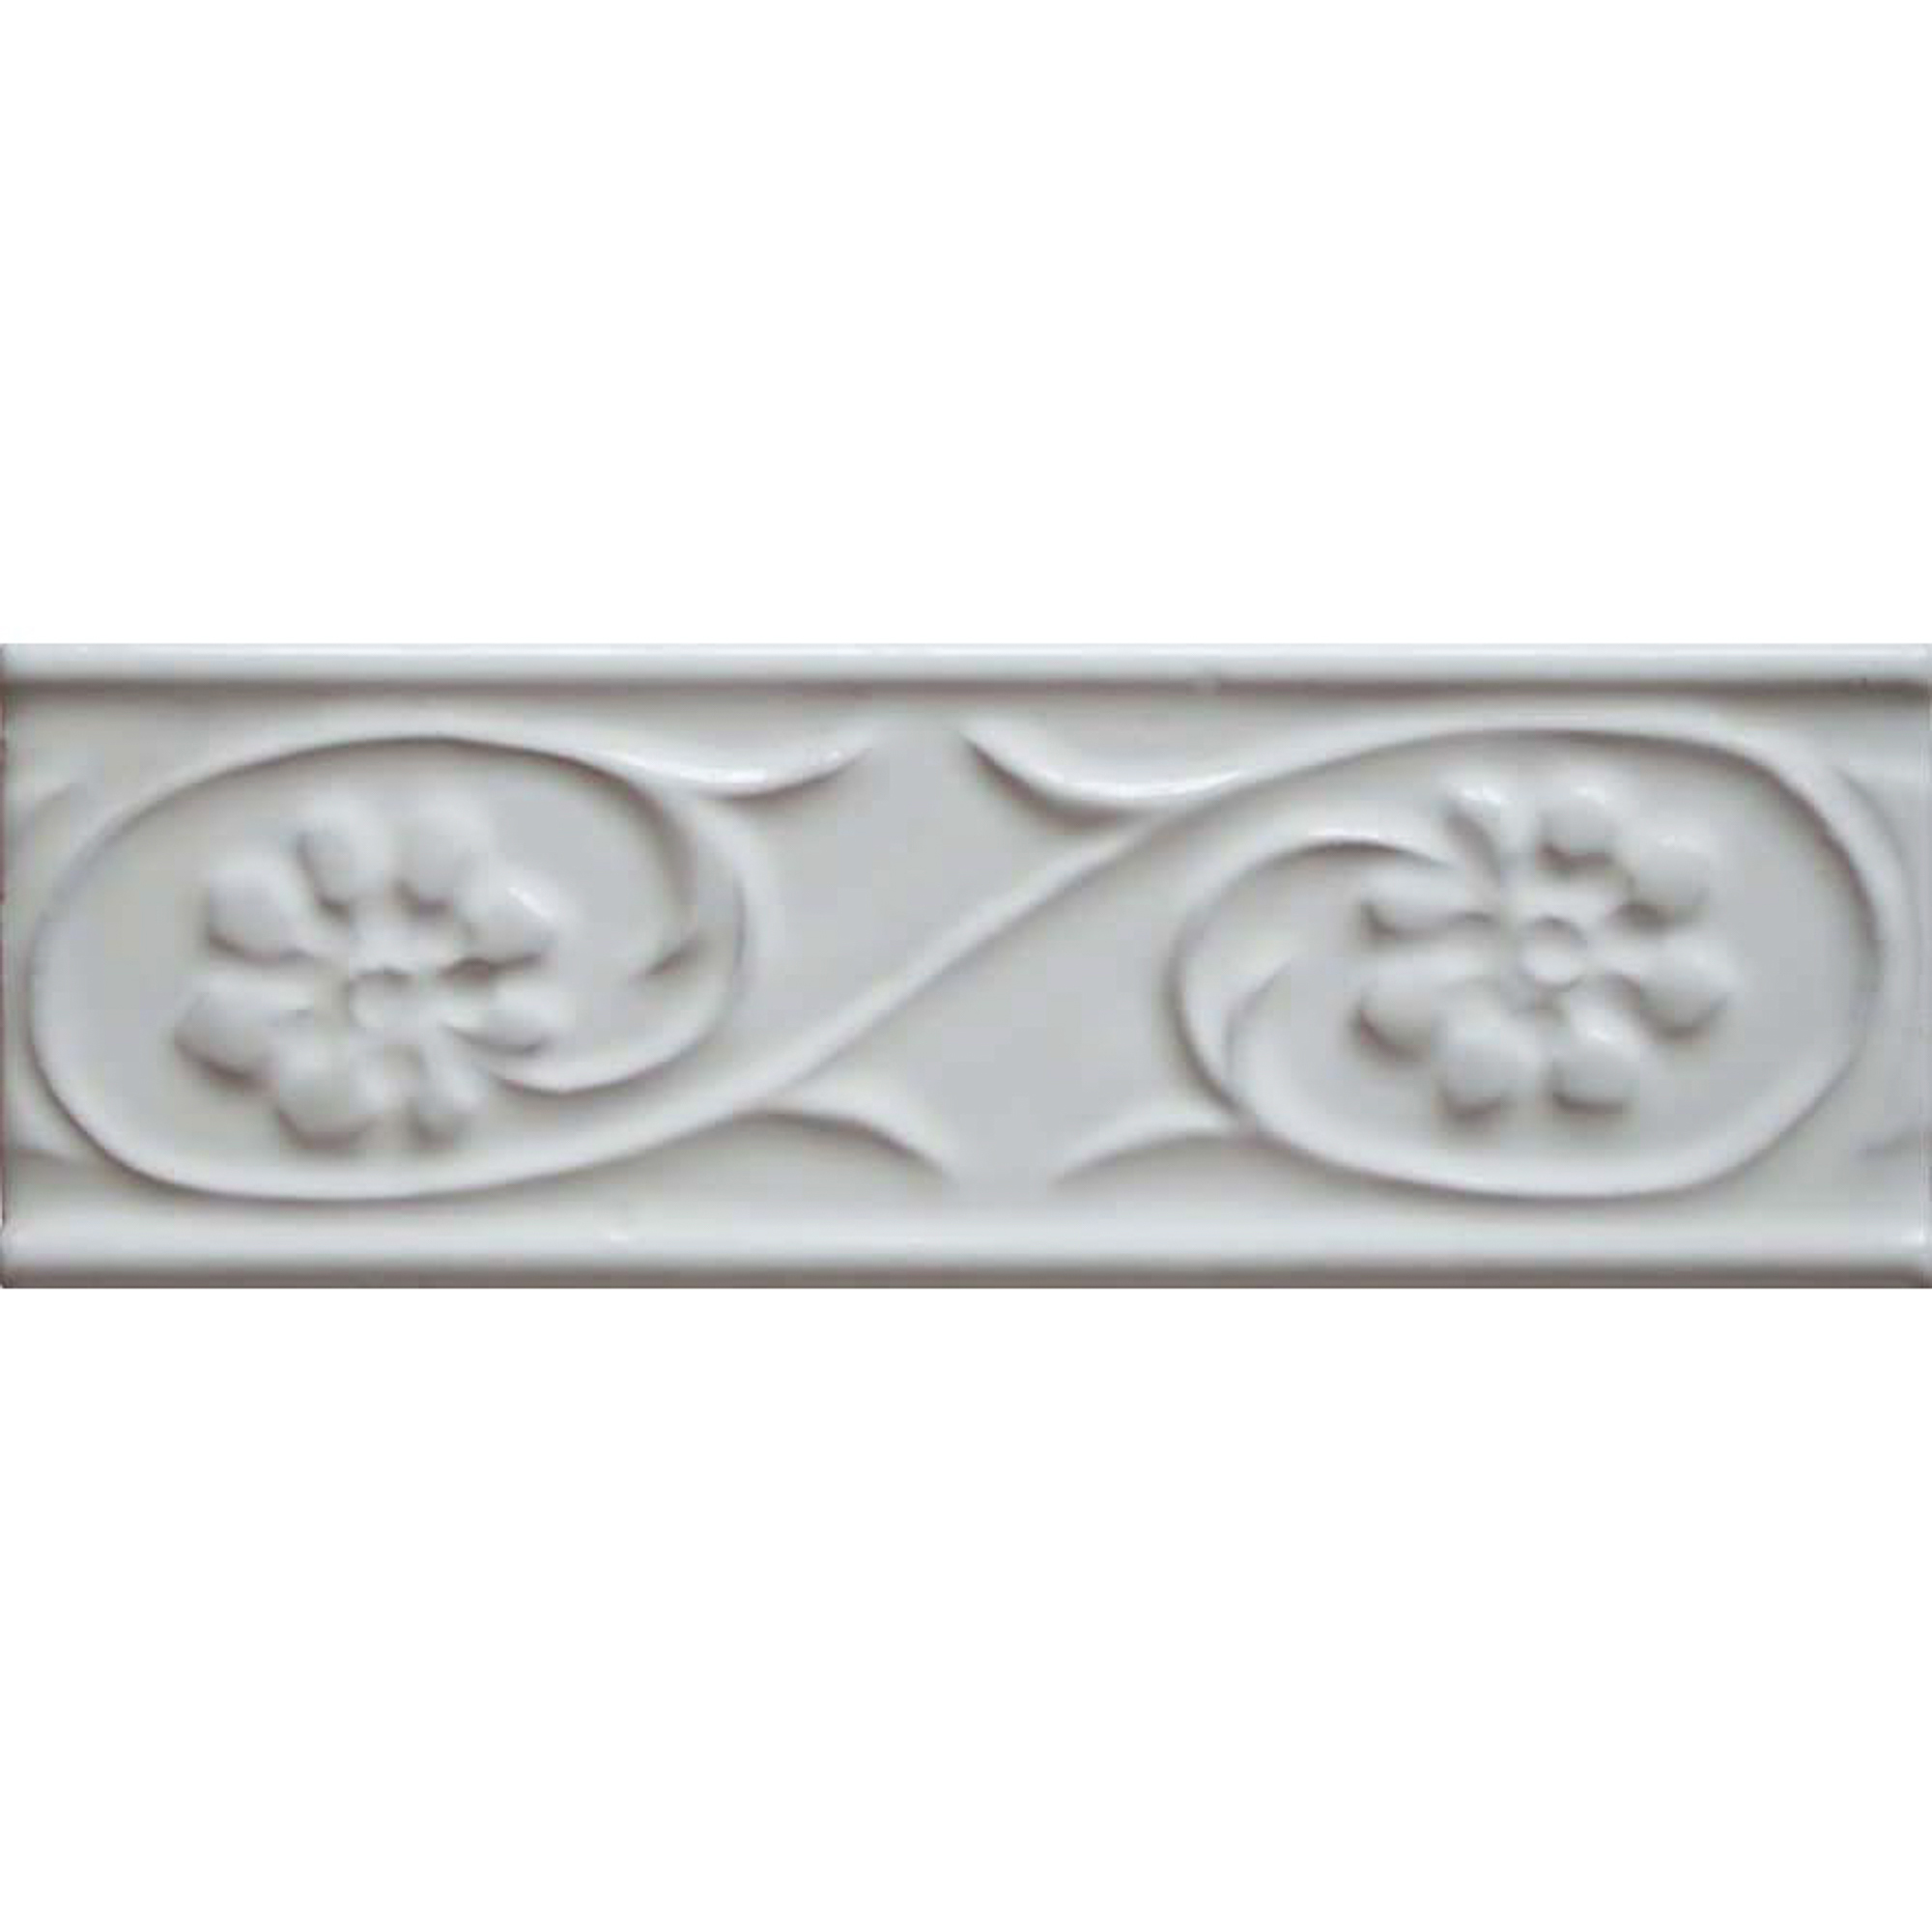 настенная плитка adex modernista liso pb c c blanco 7 5x15 Бордюр Bellavista Biselados Blanco 5x15 см